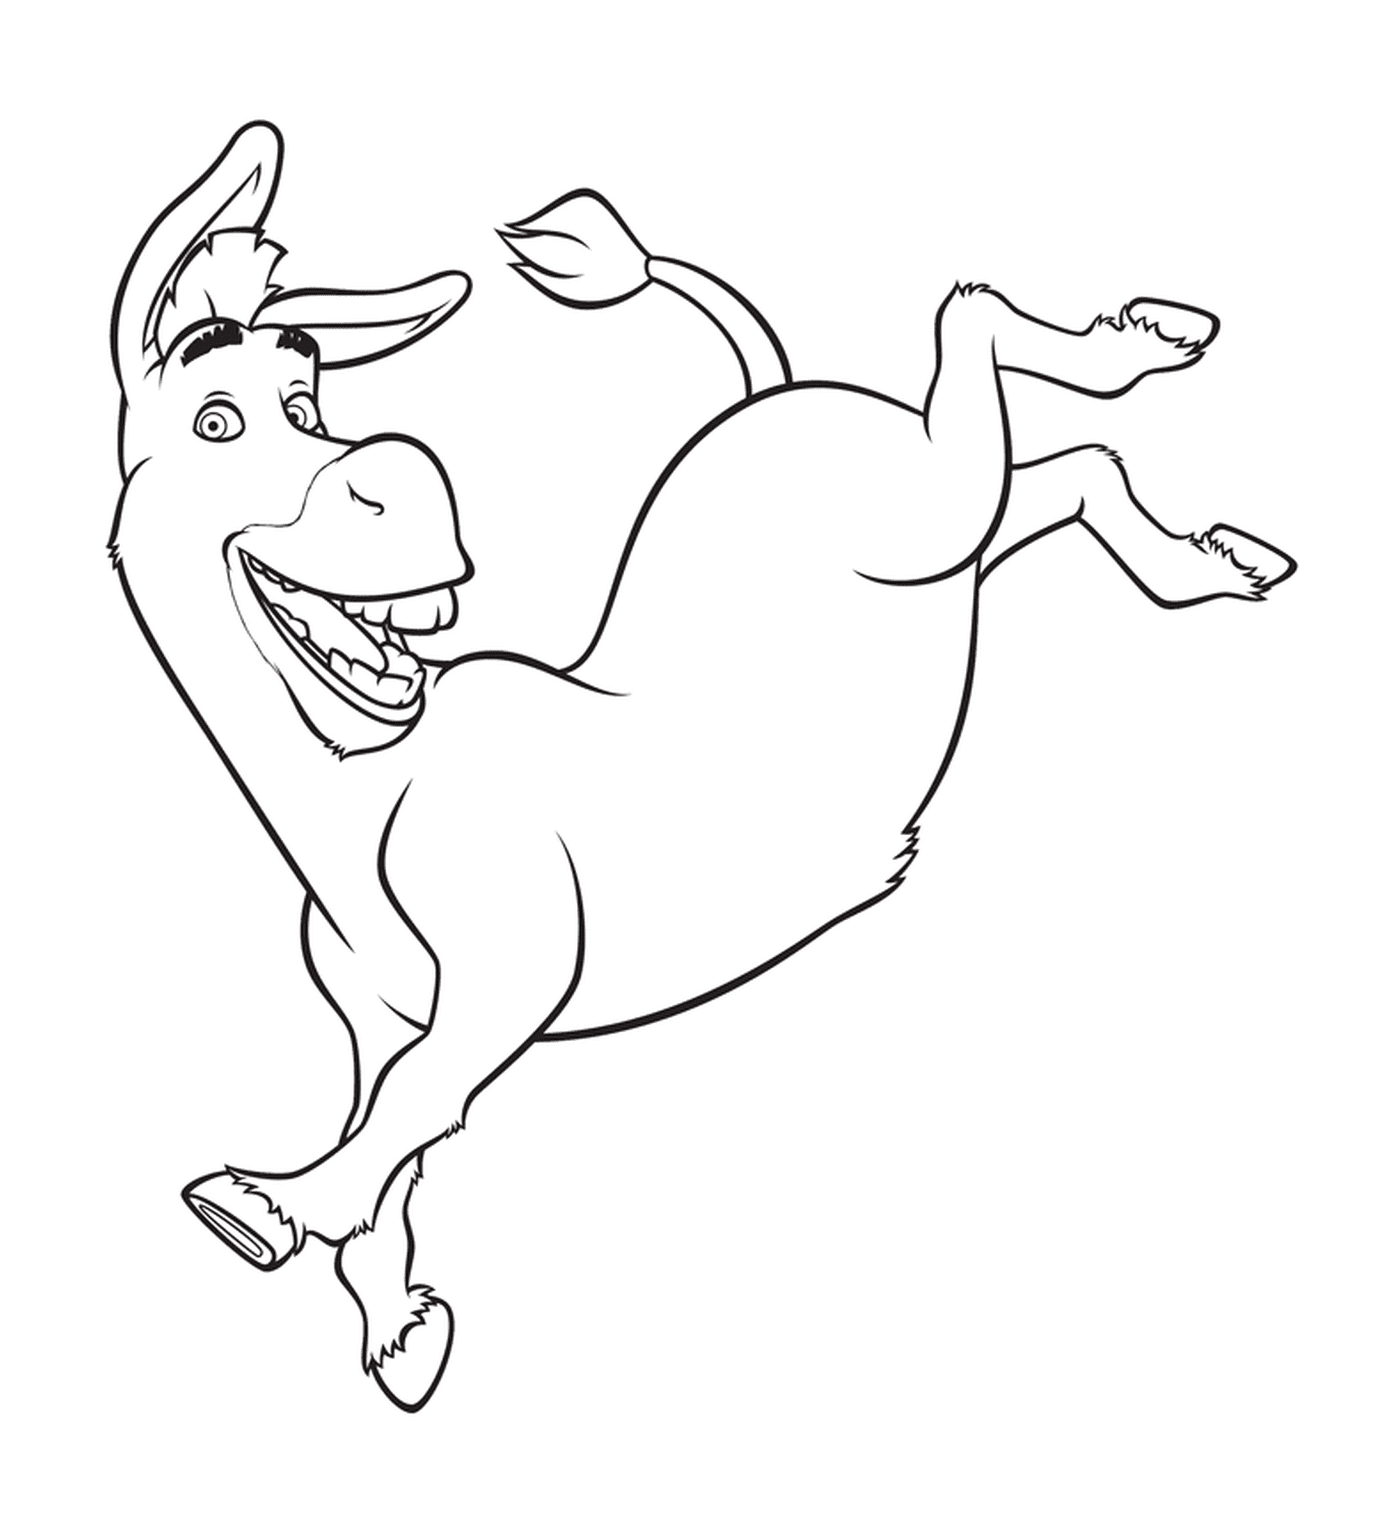  Un burro sarnoso corriendo 